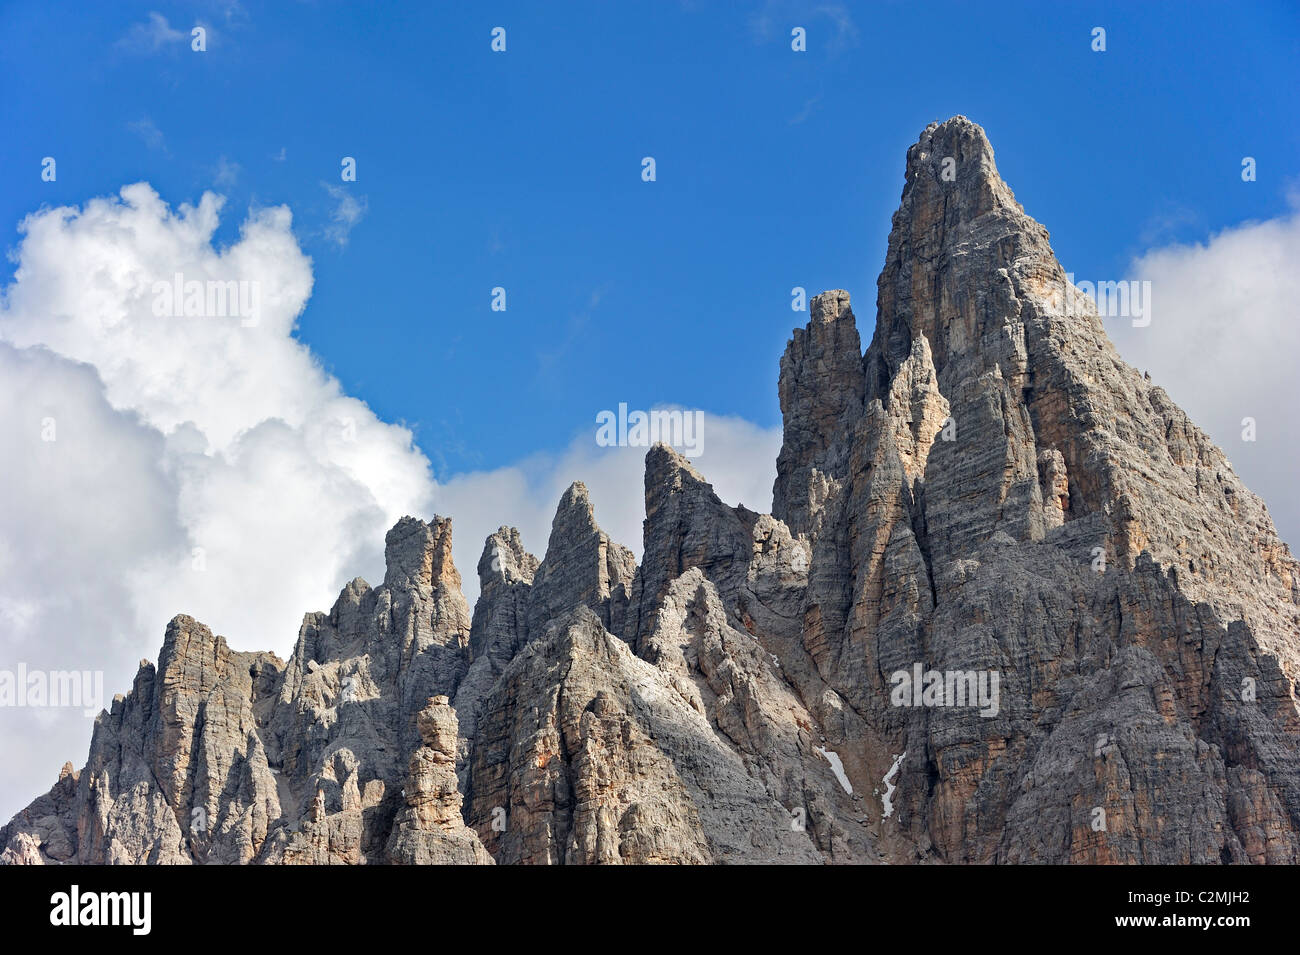 Mountain ridge in the Dolomites, Italy Stock Photo